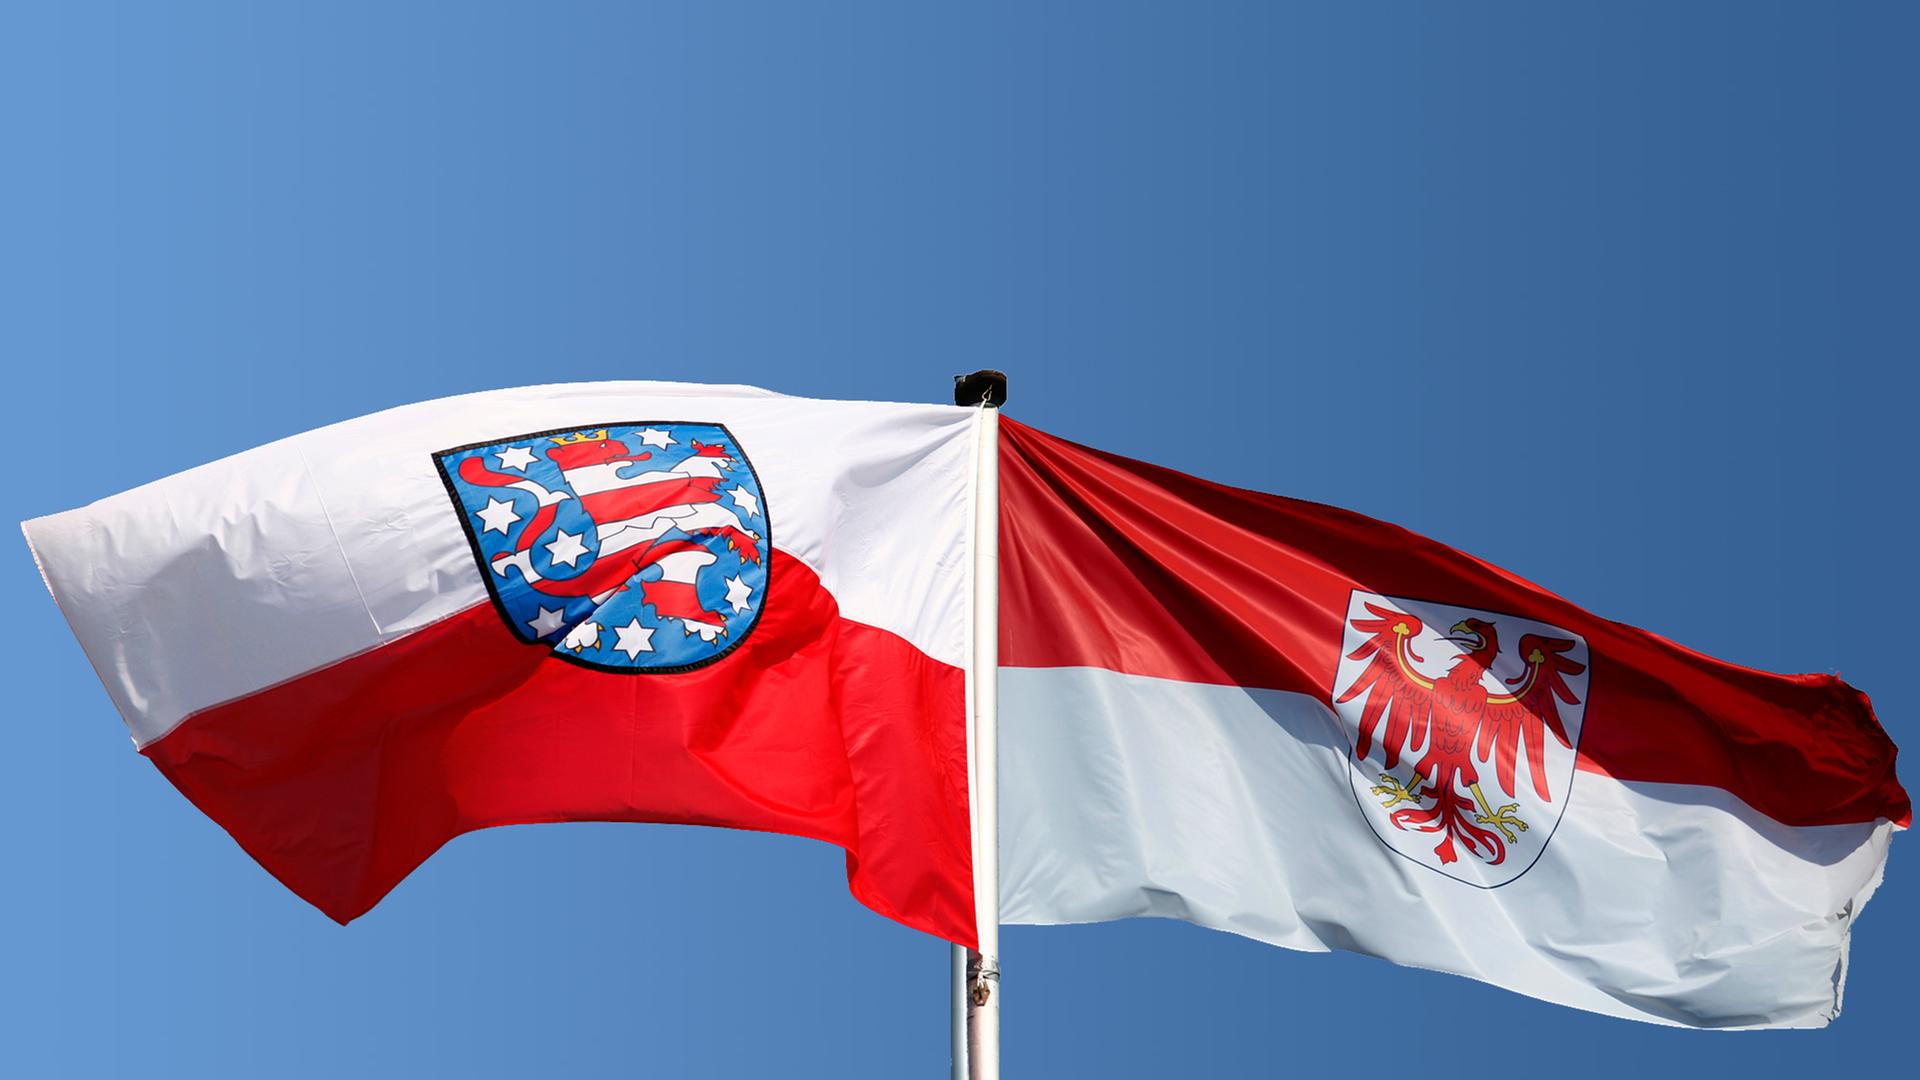 Die Landesflaggen von Thüringen und Brandenburg wehen in dieser Collage an einem Fahnenmast.